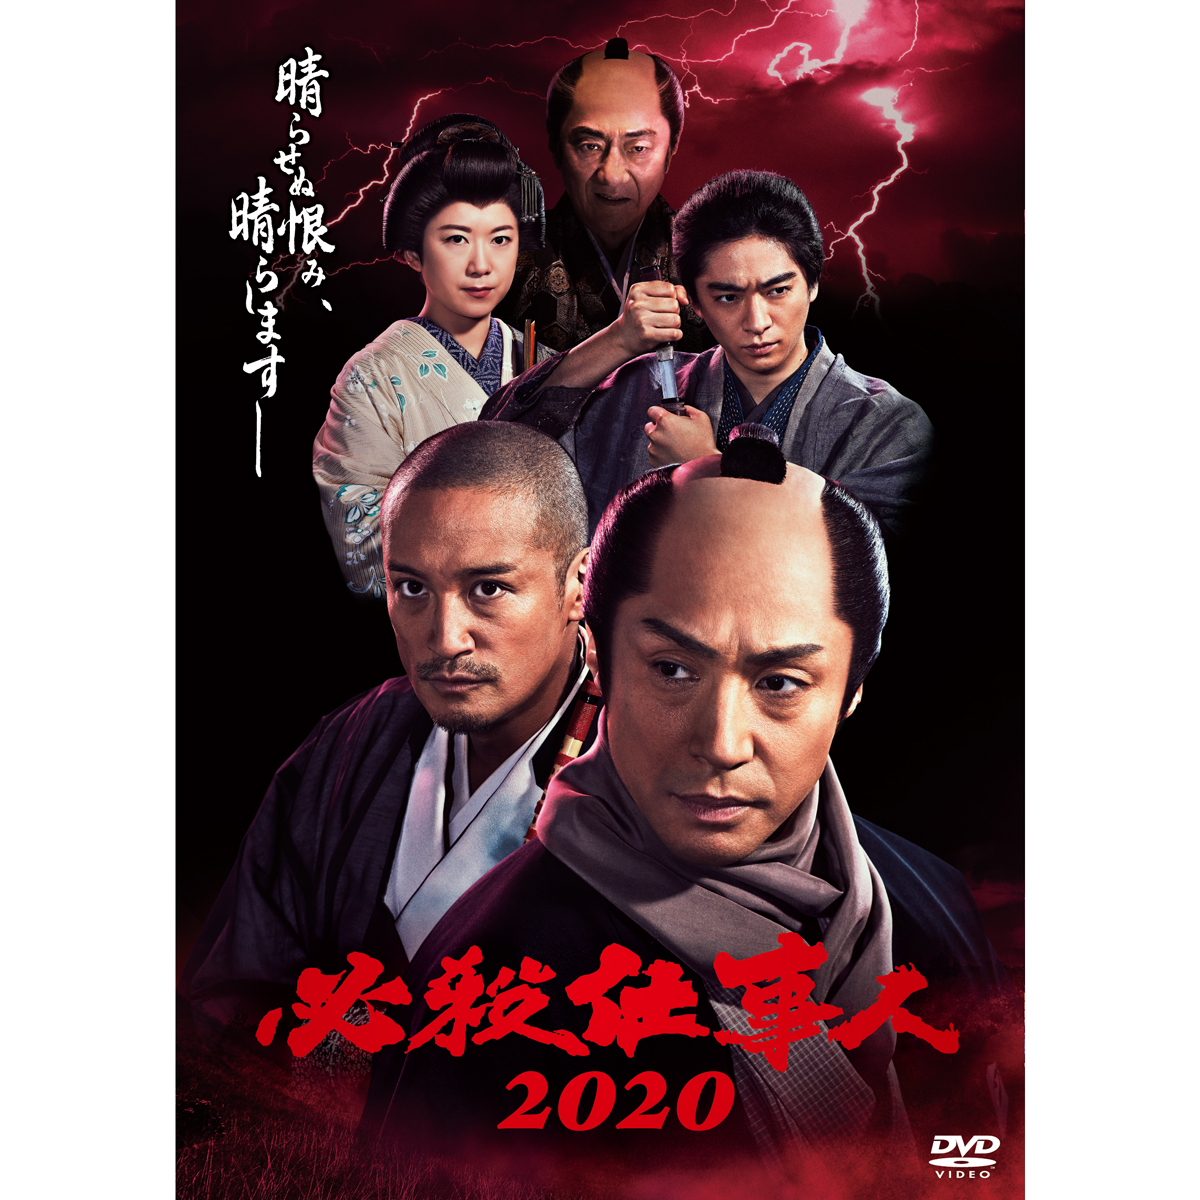 DVD「必殺仕事人2020」